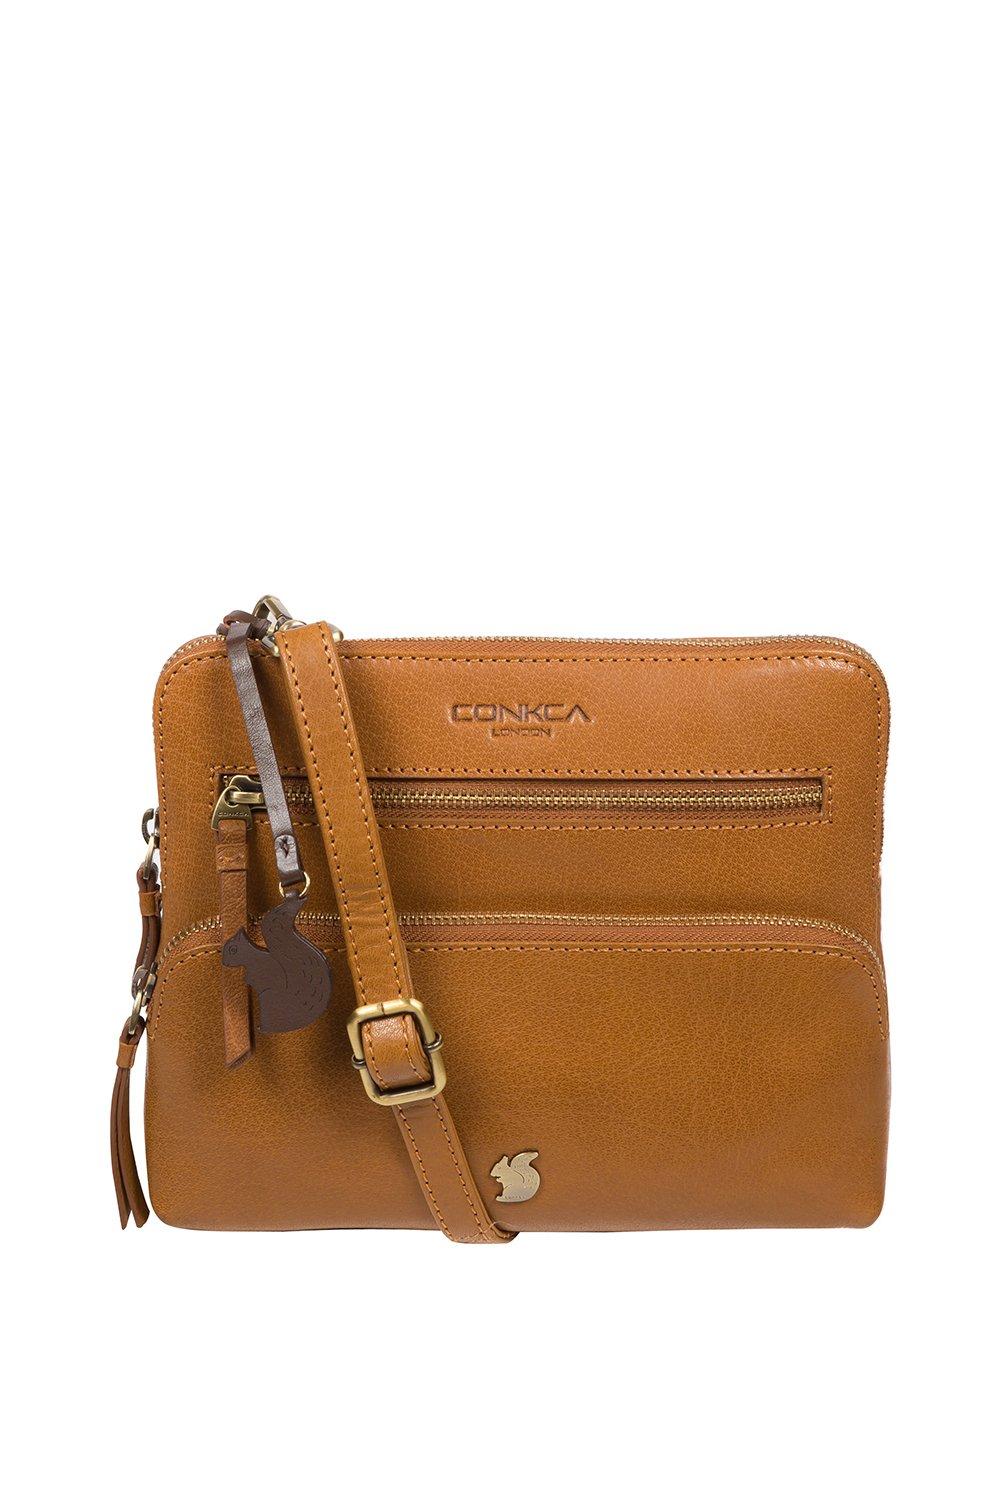 debenhams collection handbag | eBay